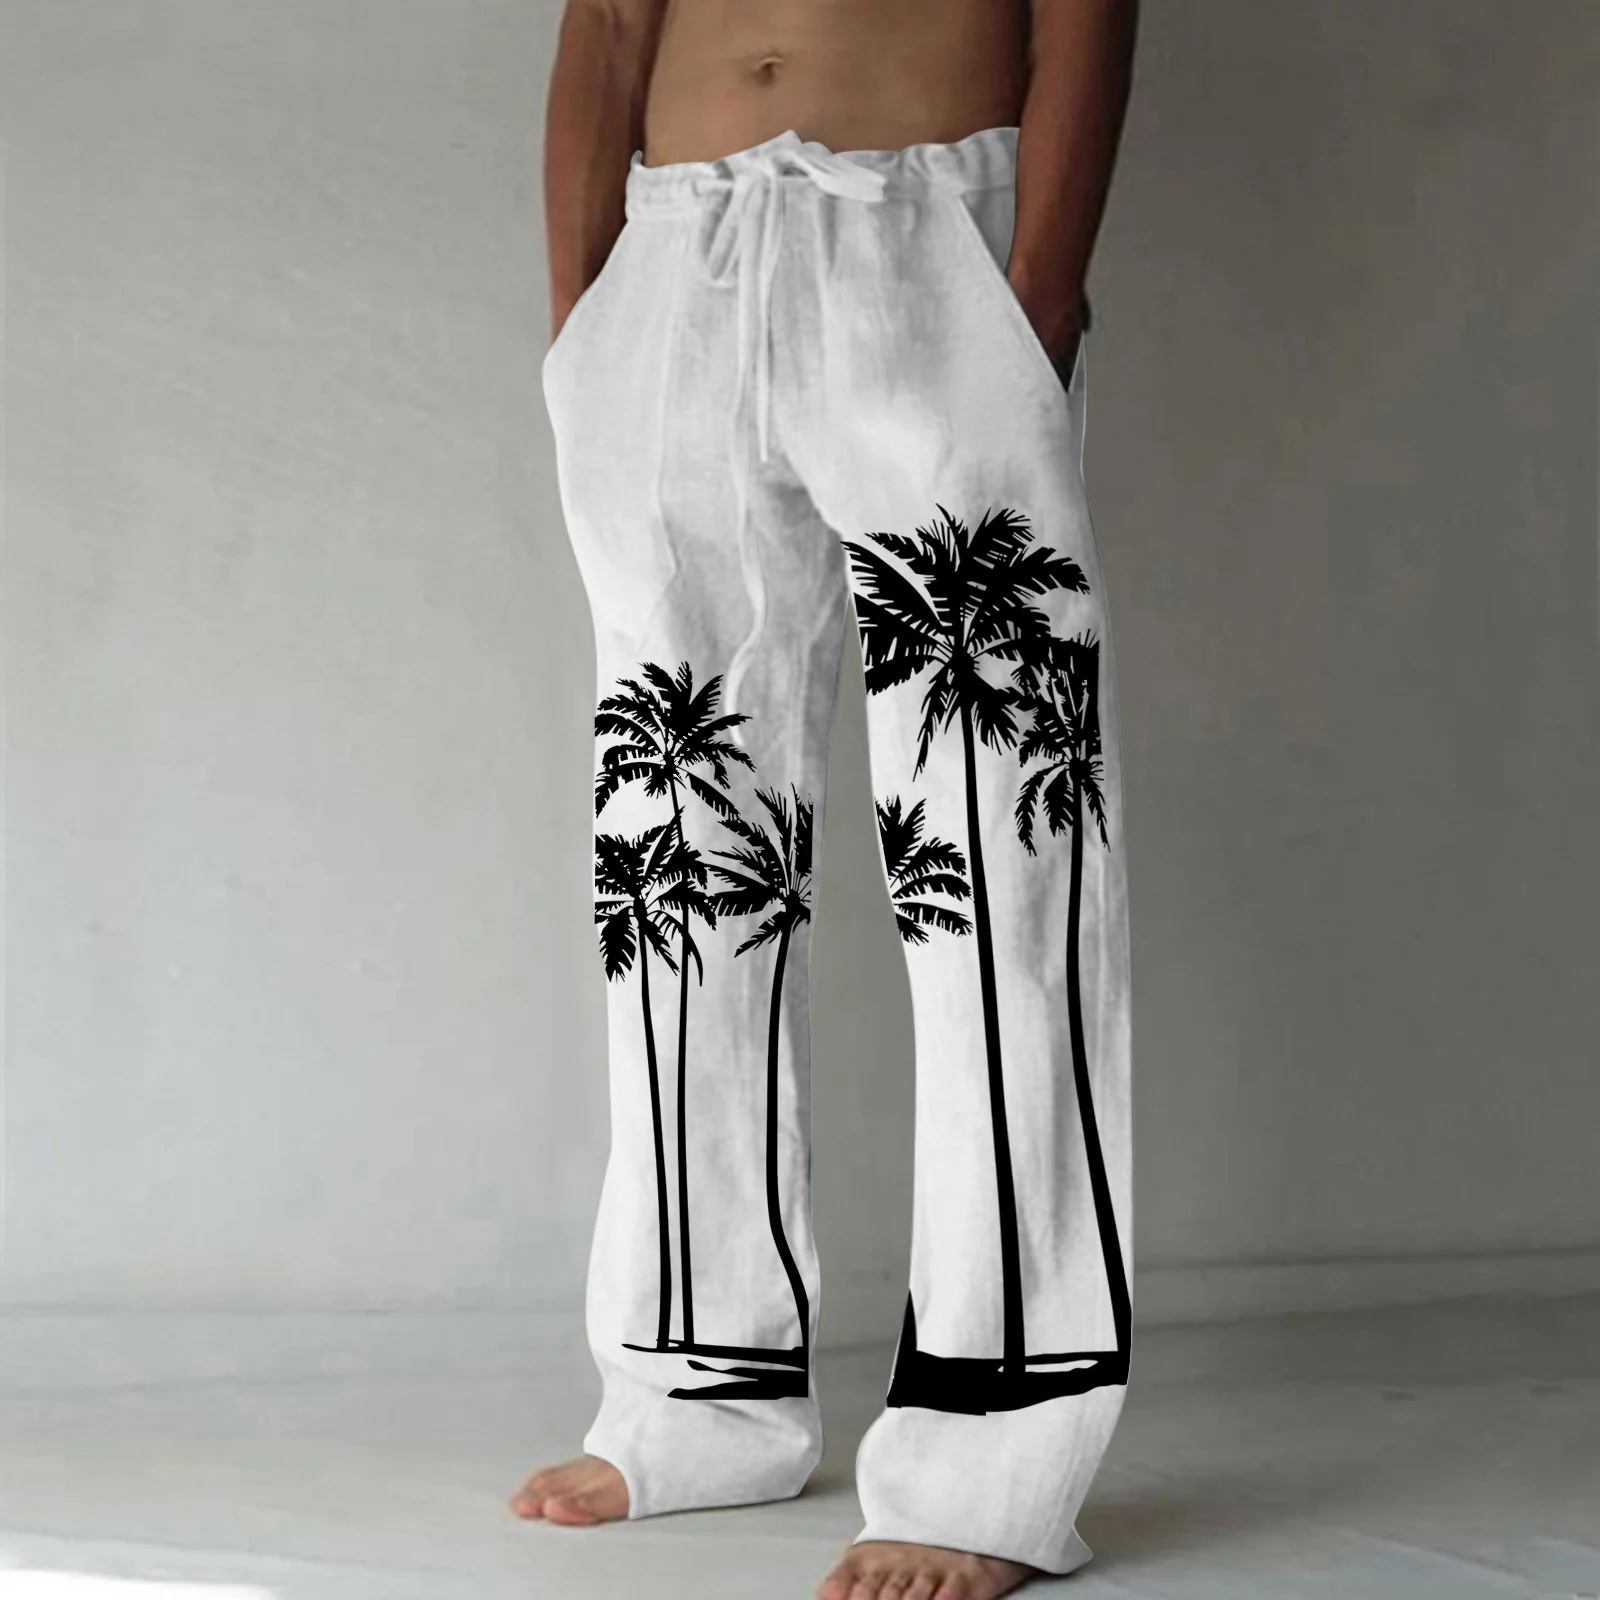 

Брюки мужские хлопково-льняные, повседневные мешковатые тренировочные штаны, брюки с принтом кокосового дерева, пляжные праздничные штаны для йоги и бега, уличная одежда